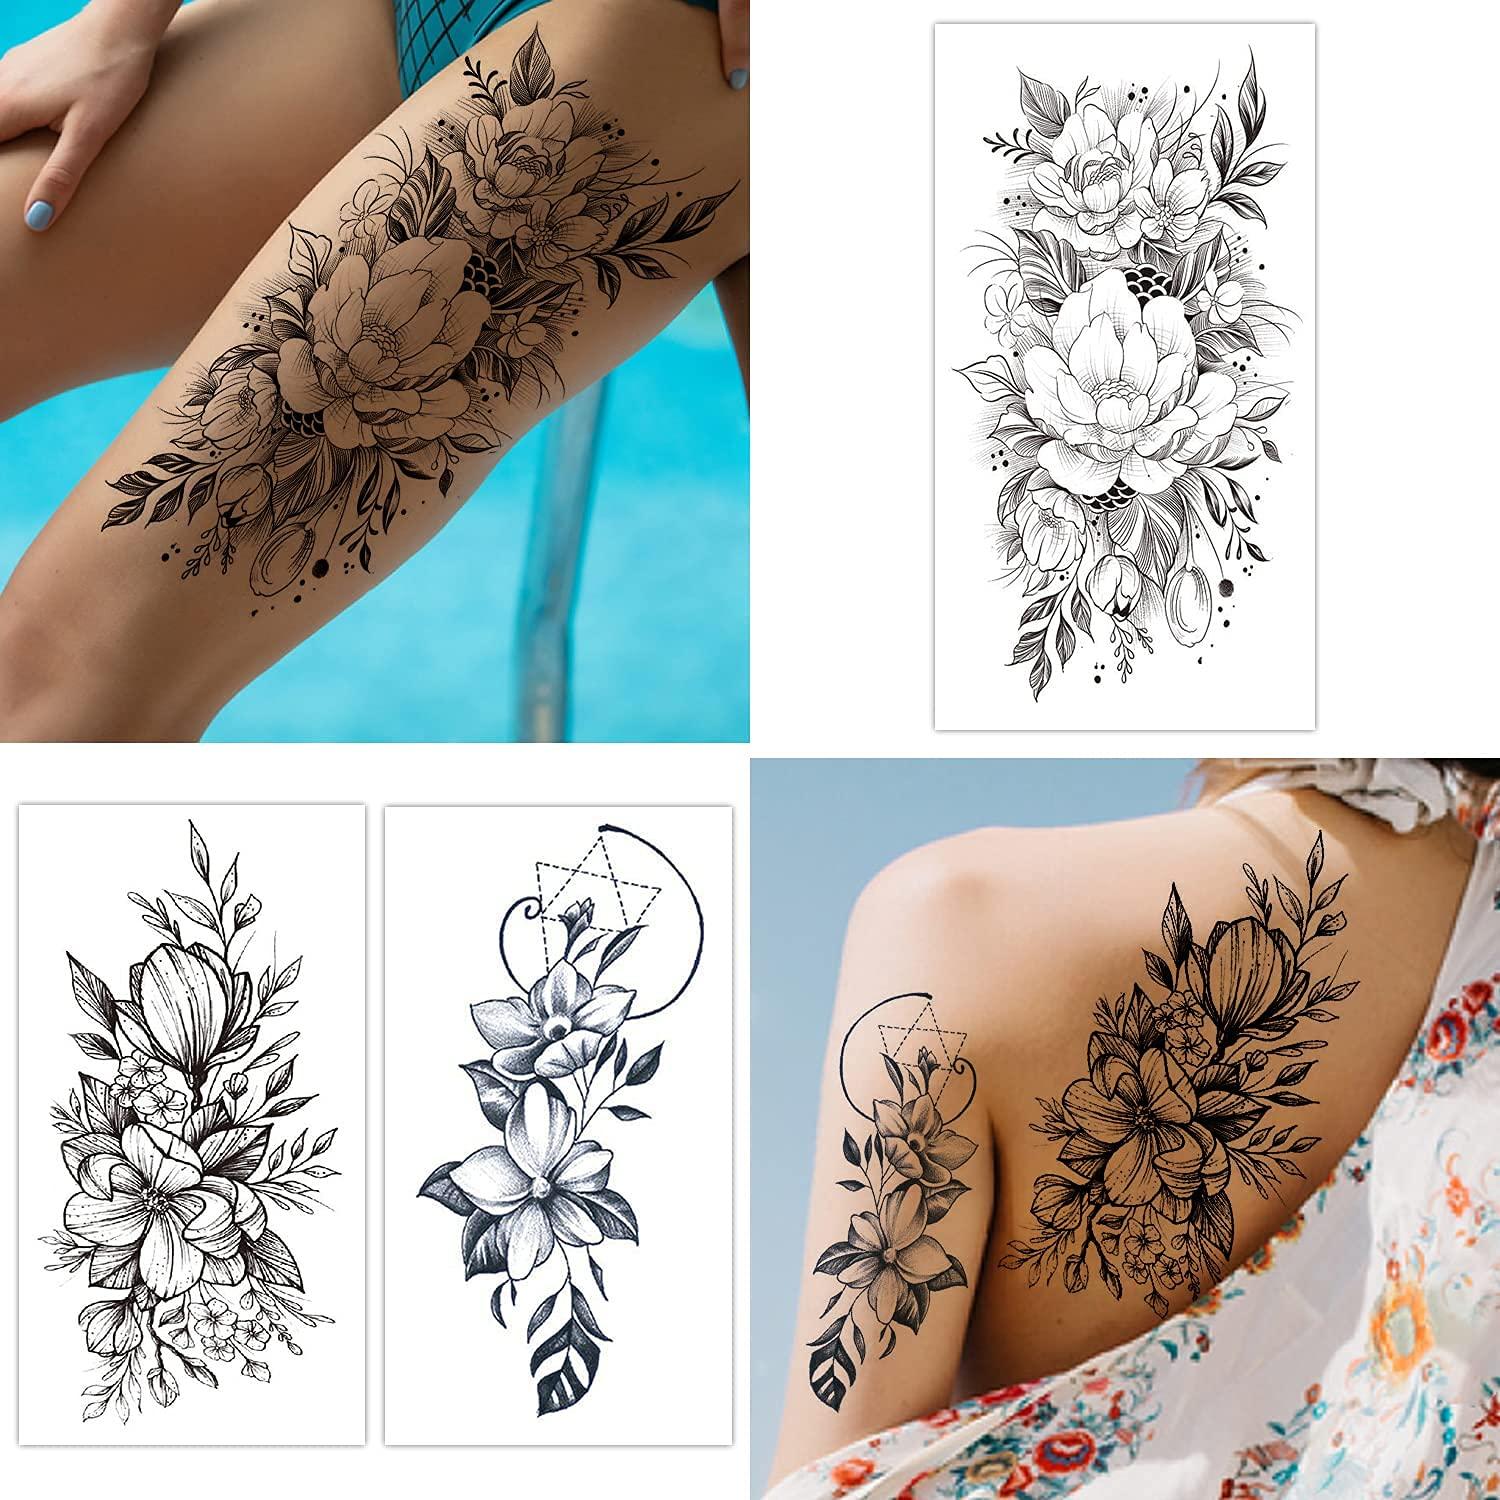 Beautiful Leg Tattoos for Girls - New Designs  Tattoos for women half  sleeve, Leg tattoos women, Unique tattoo fonts